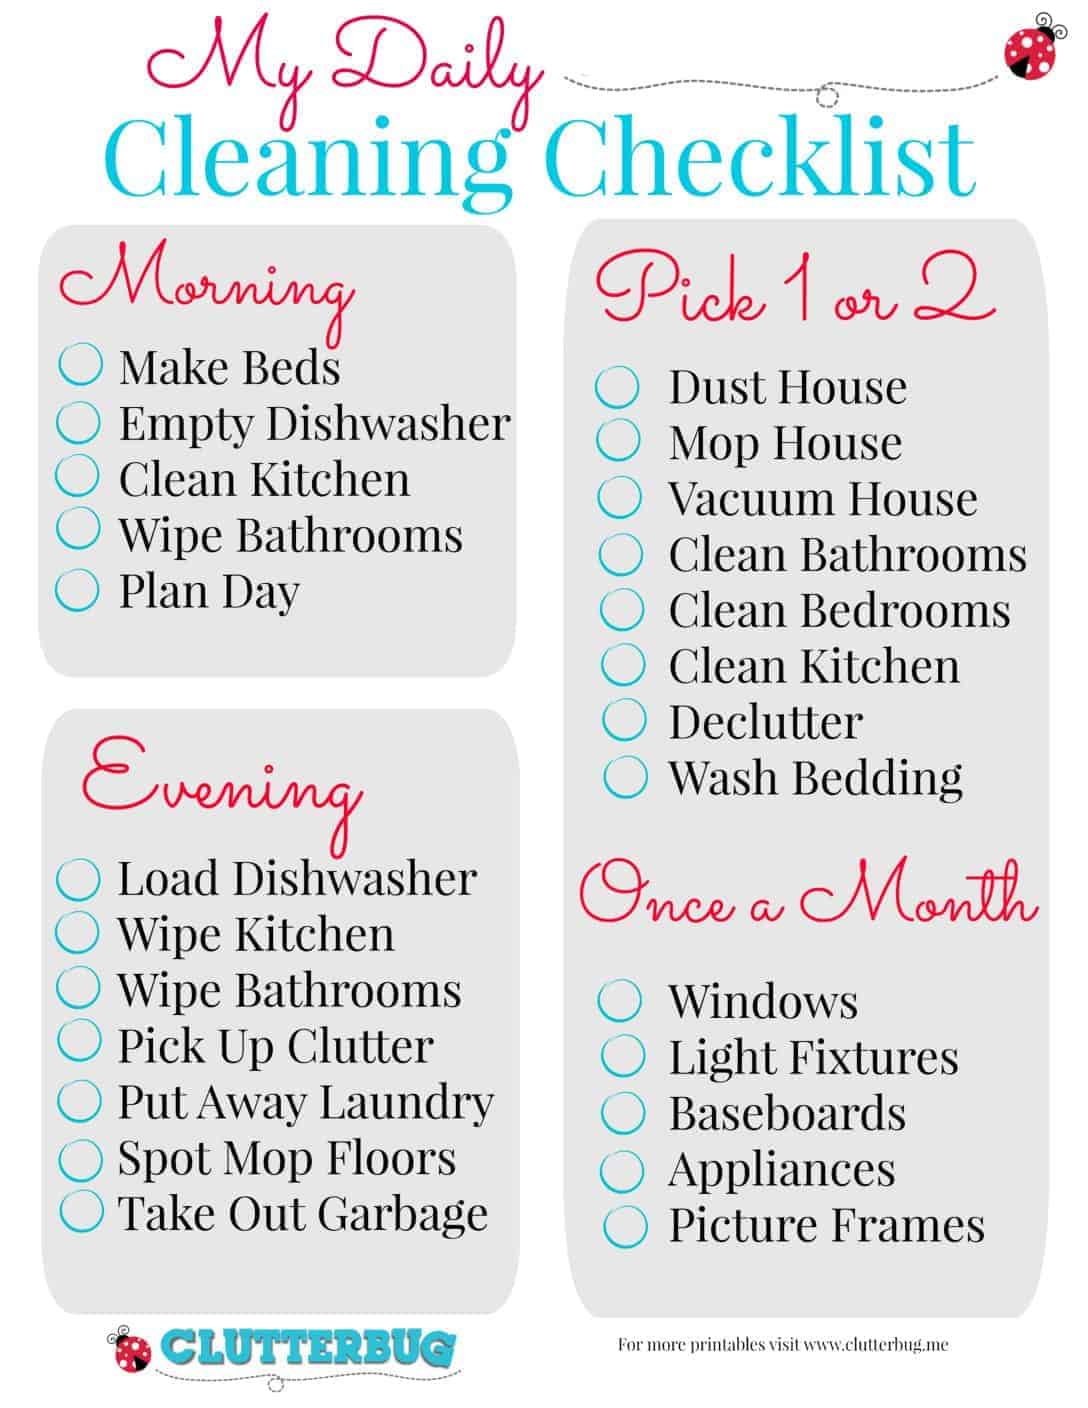 Cleaning Schedule Checklist